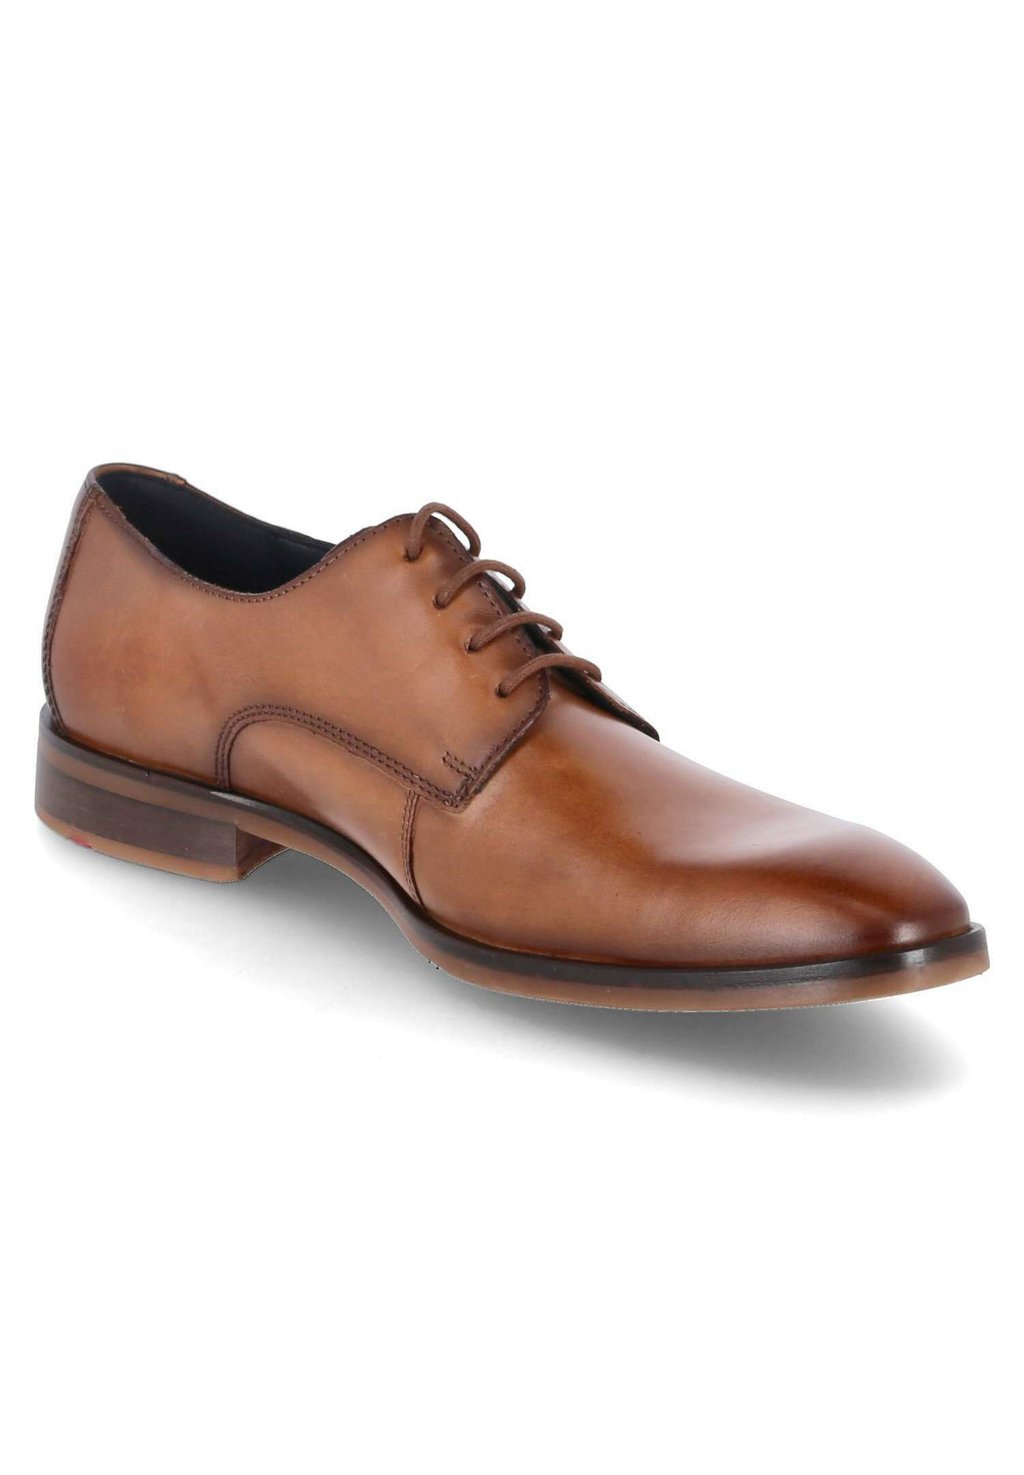 Туфли на шнуровке Odil Lloyd, цвет braun деловые туфли на шнуровке mare lloyd цвет braun